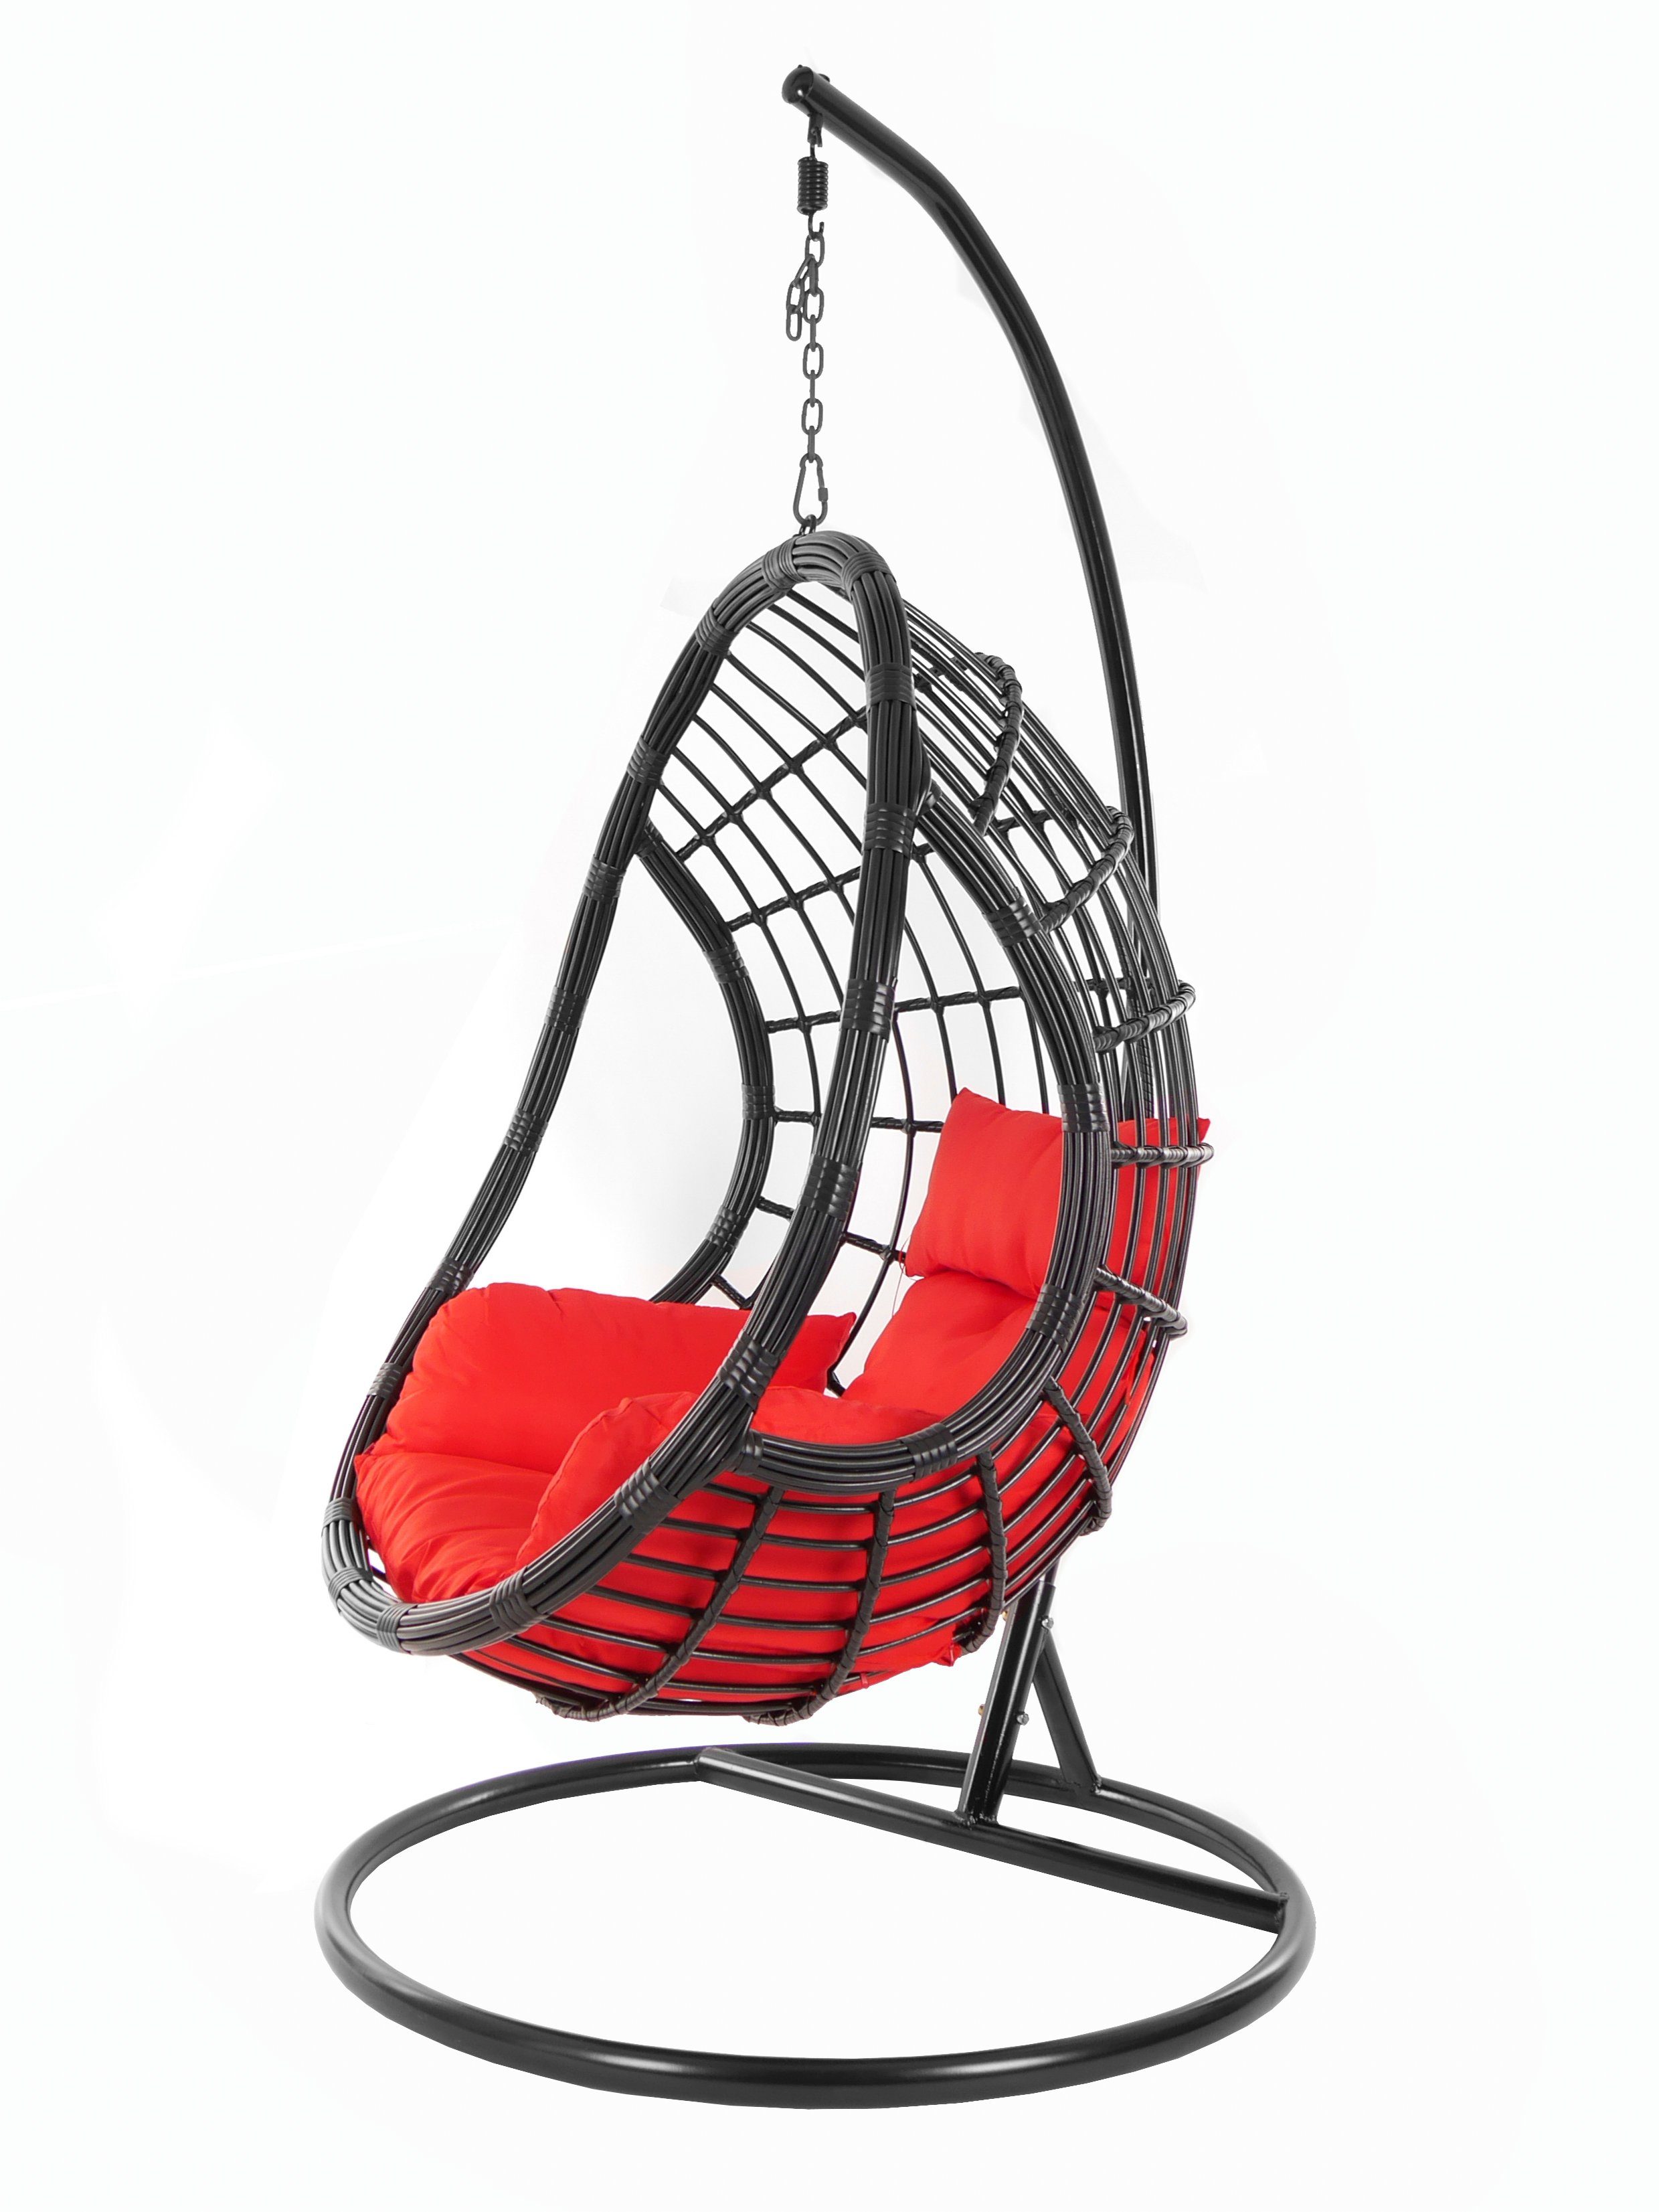 KIDEO Hängesessel PALMANOVA black, Schwebesessel, Swing Chair, Hängesessel mit Gestell und Kissen, Nest-Kissen rot (3050 scarlet)